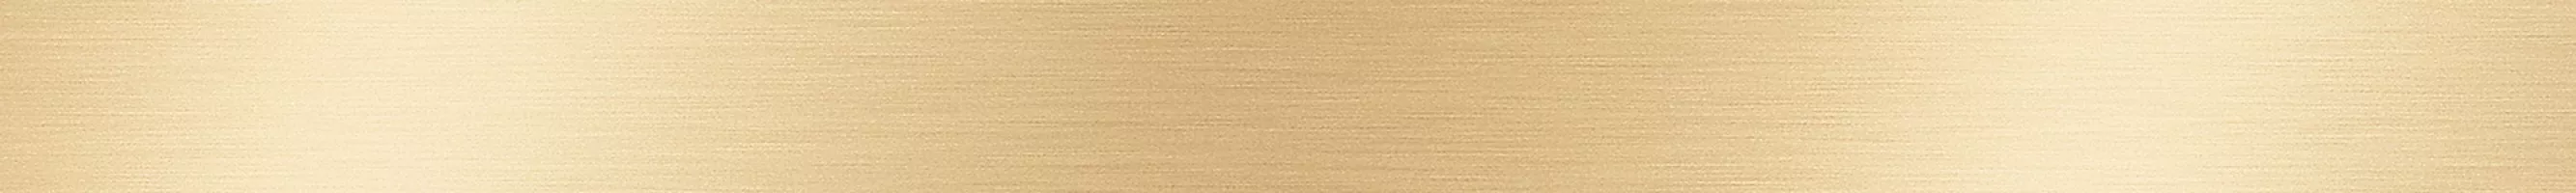 Плитка настенная Laparet 40x3 бордюр метал. золото глянцевое Универсальные Элементы глянцевая глазурованная